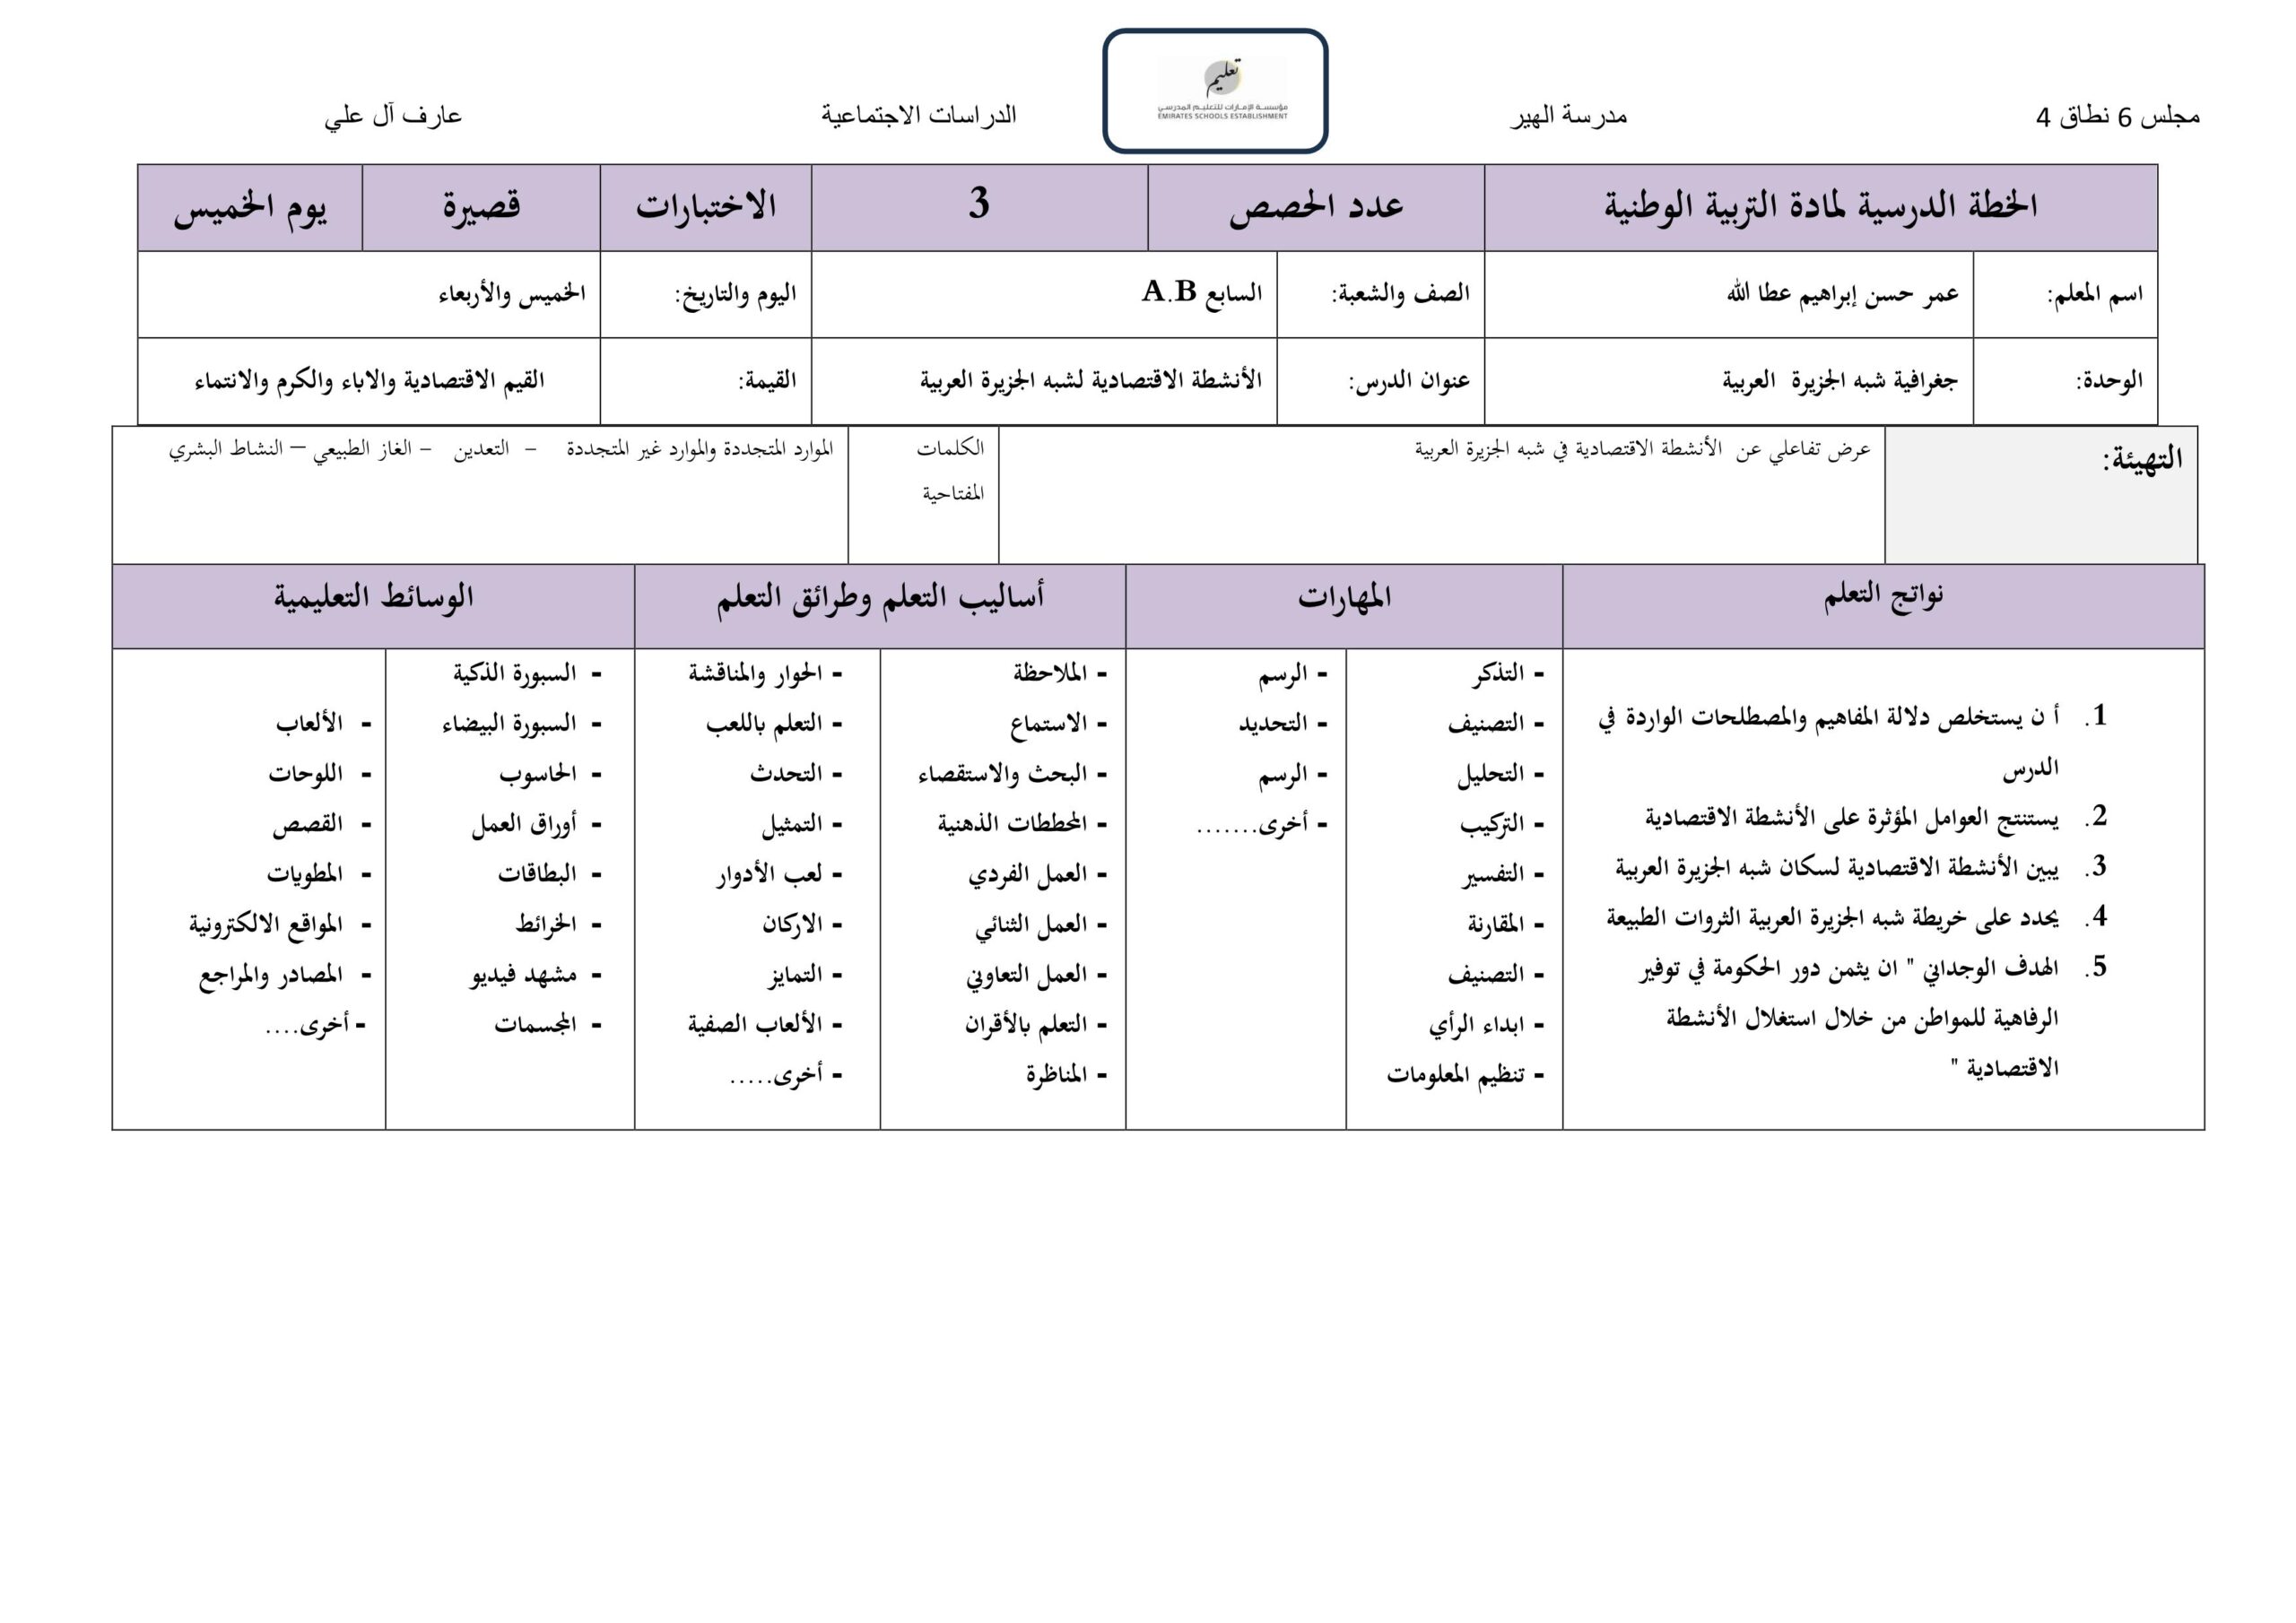 الخطة الدرسية اليومية الأنشطة الإقتصادية لشبه الجزيرة العربية الدراسات الإجتماعية والتربية الوطنية الصف السابع